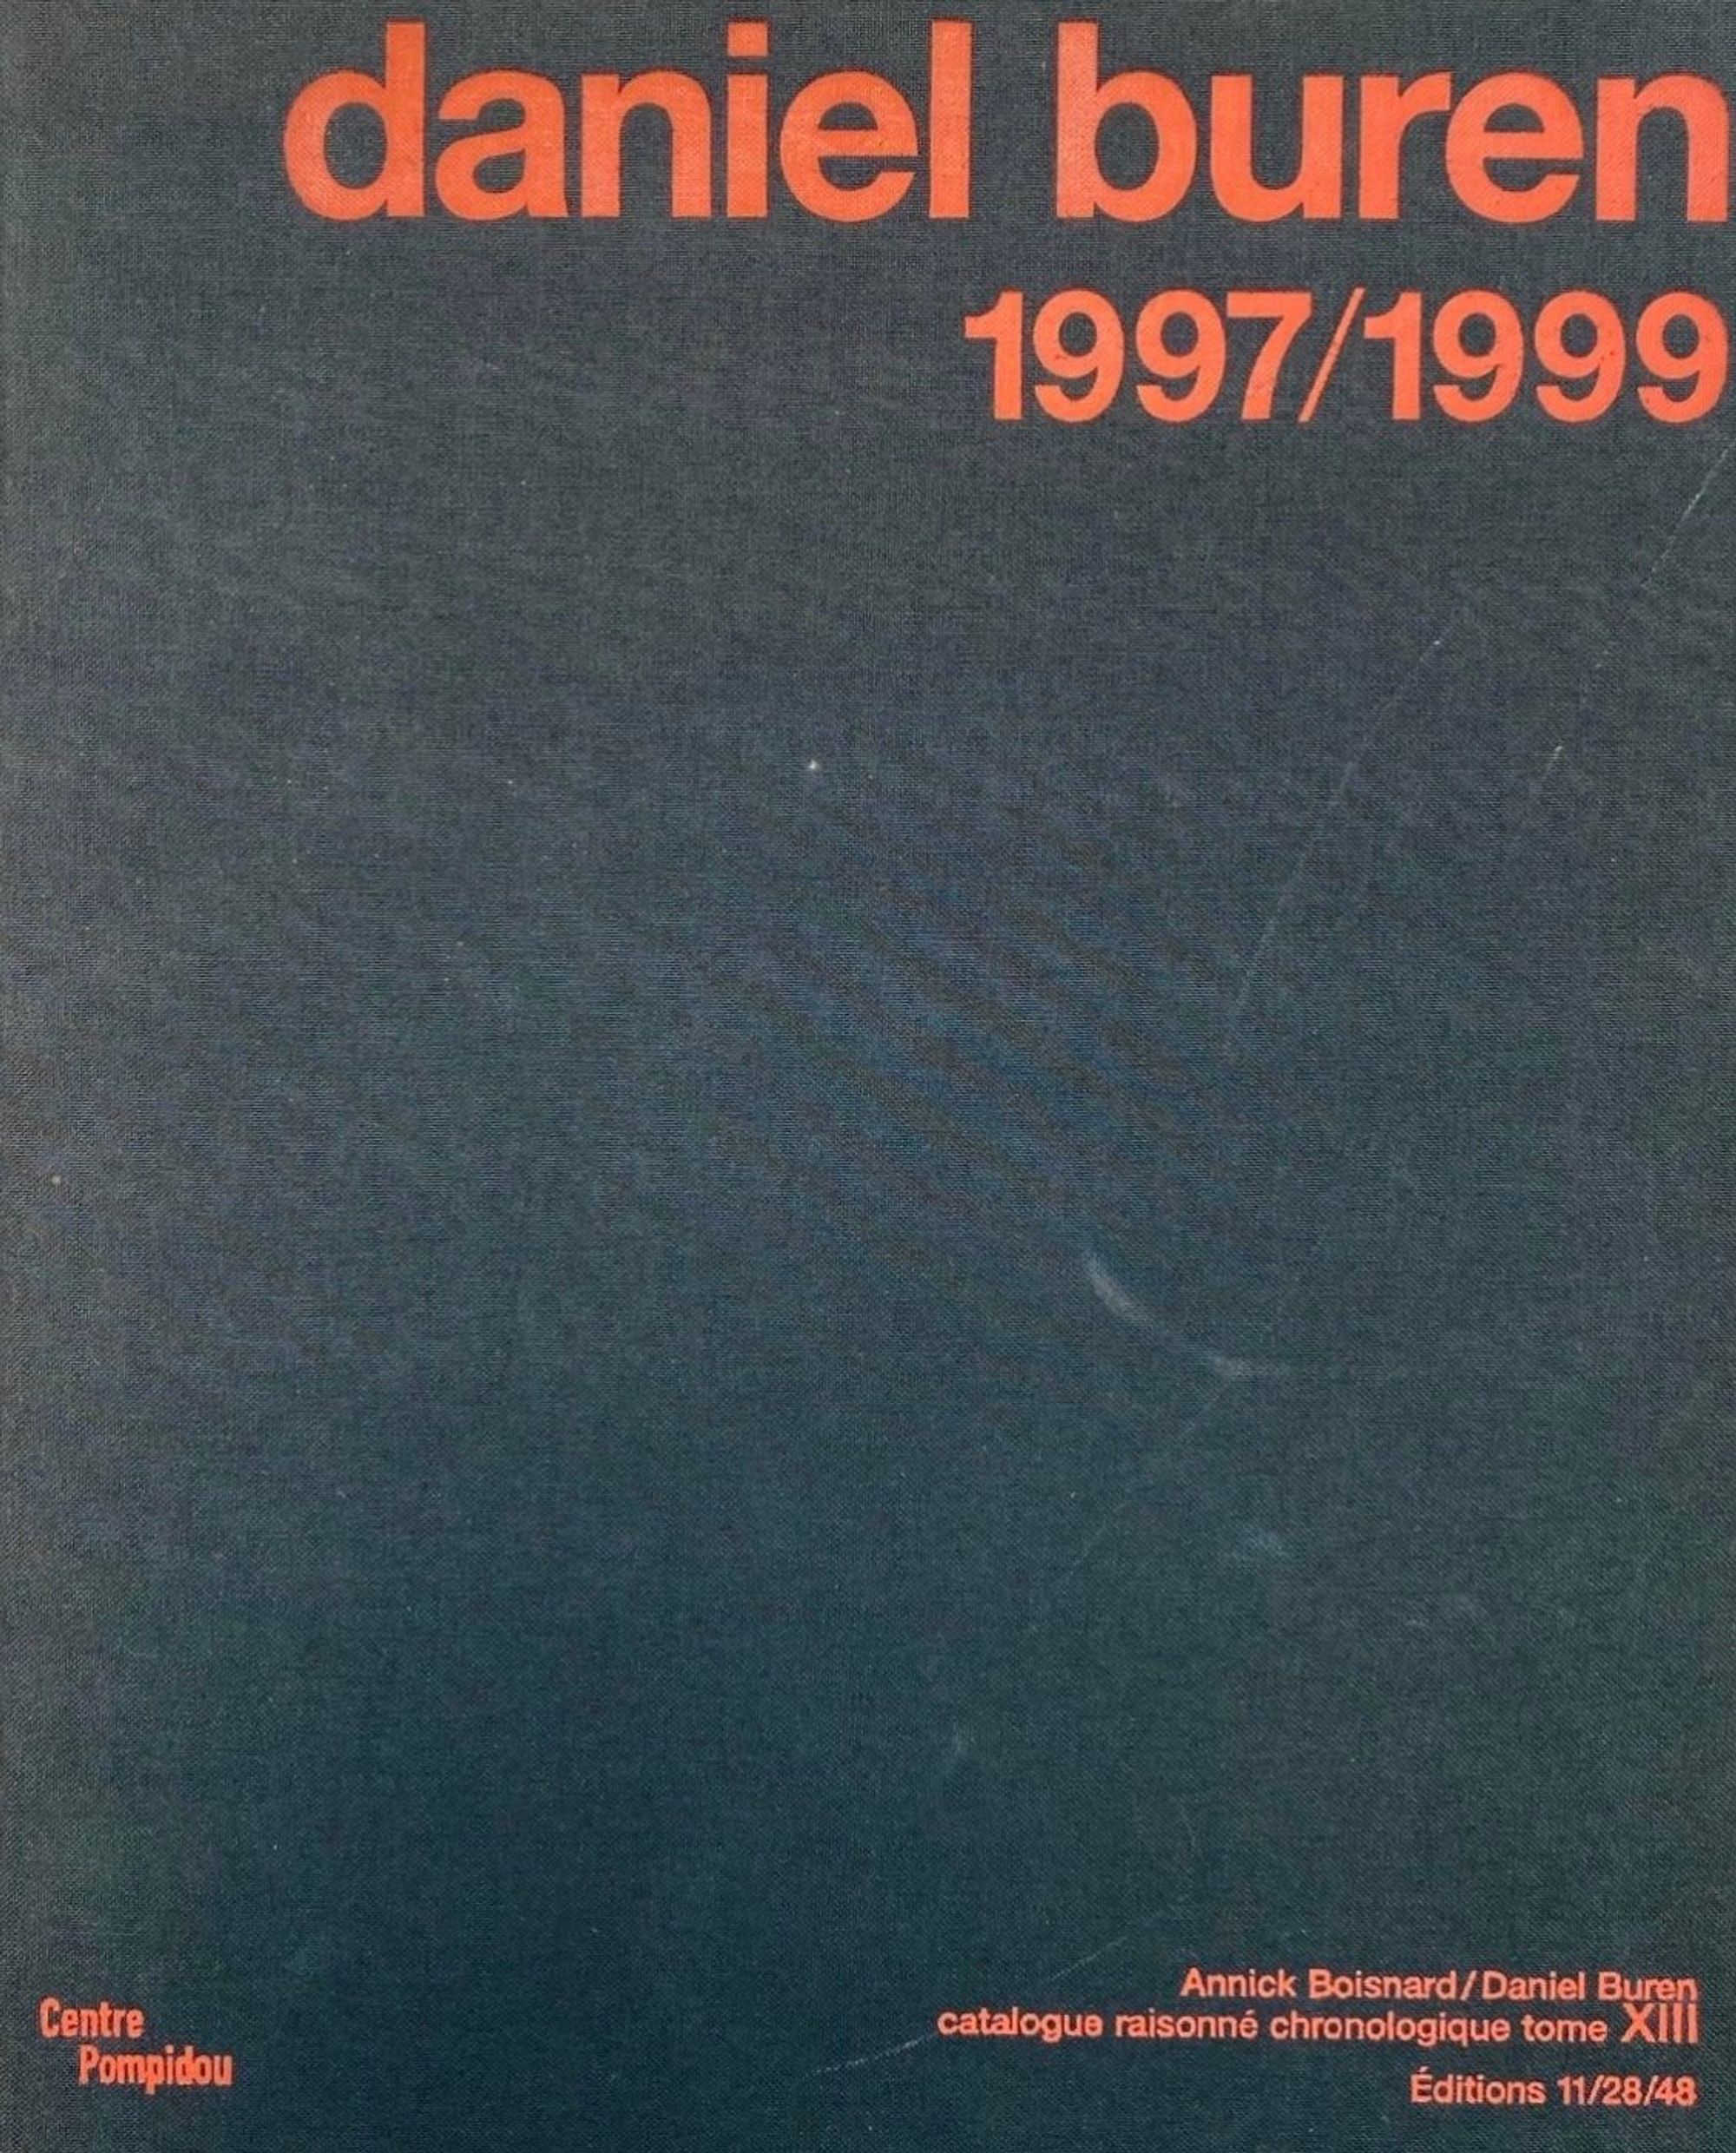 Detail view of Catalogue raisonné chronologique. Tome XIII : 1997-1999 against a plain gray background